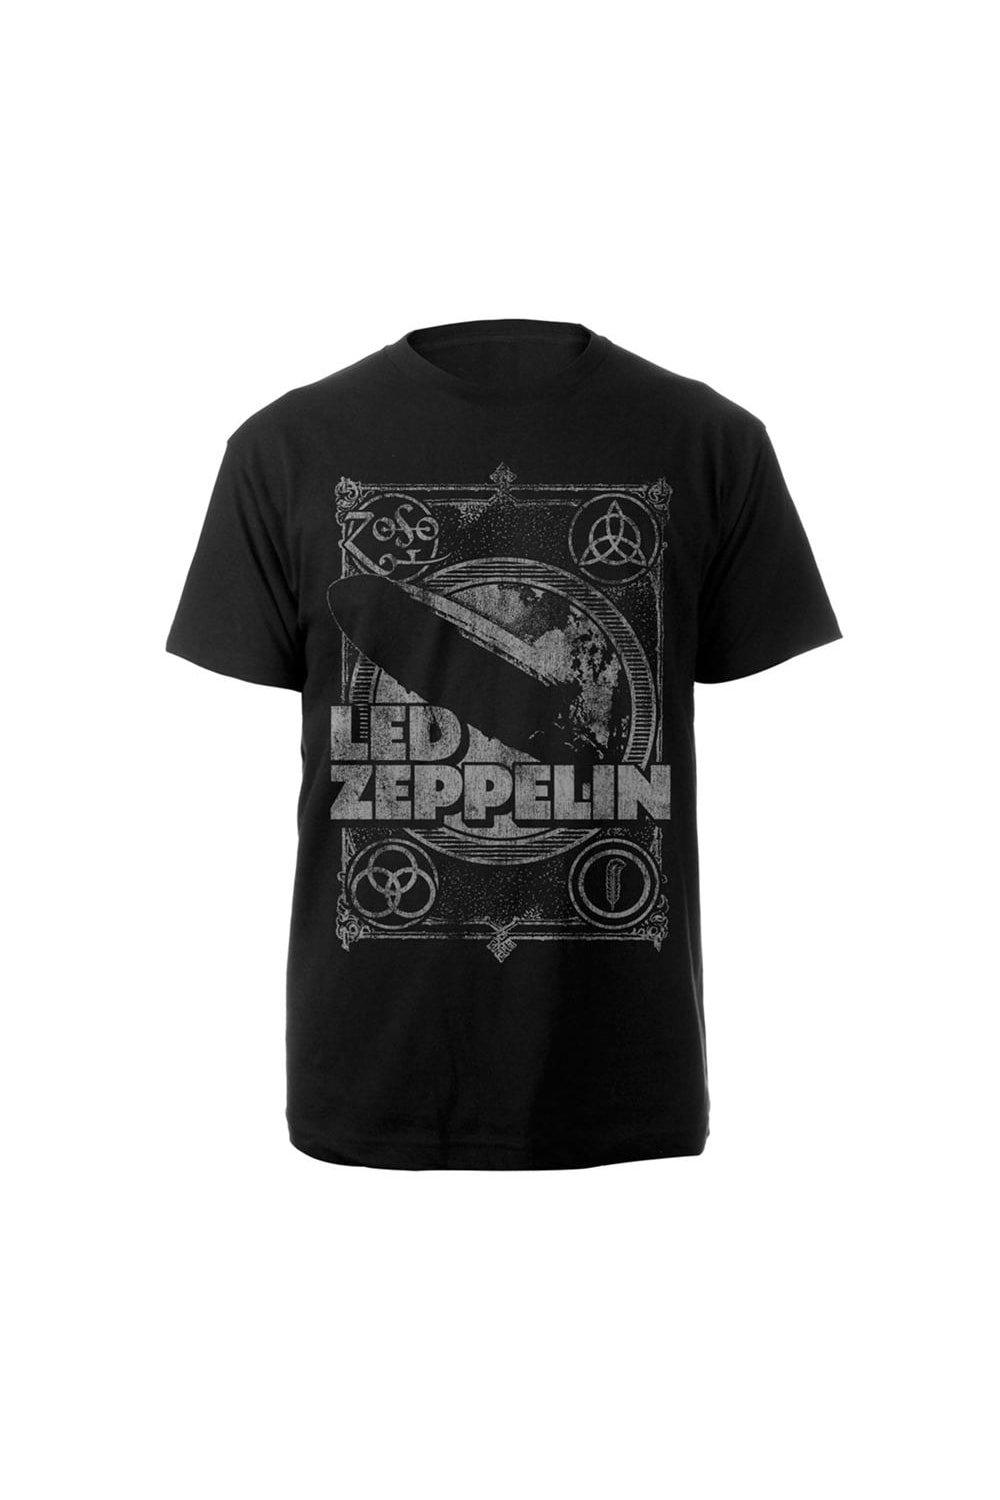 Винтажная футболка Led Zeppelin, черный трафаретная печать по ткани